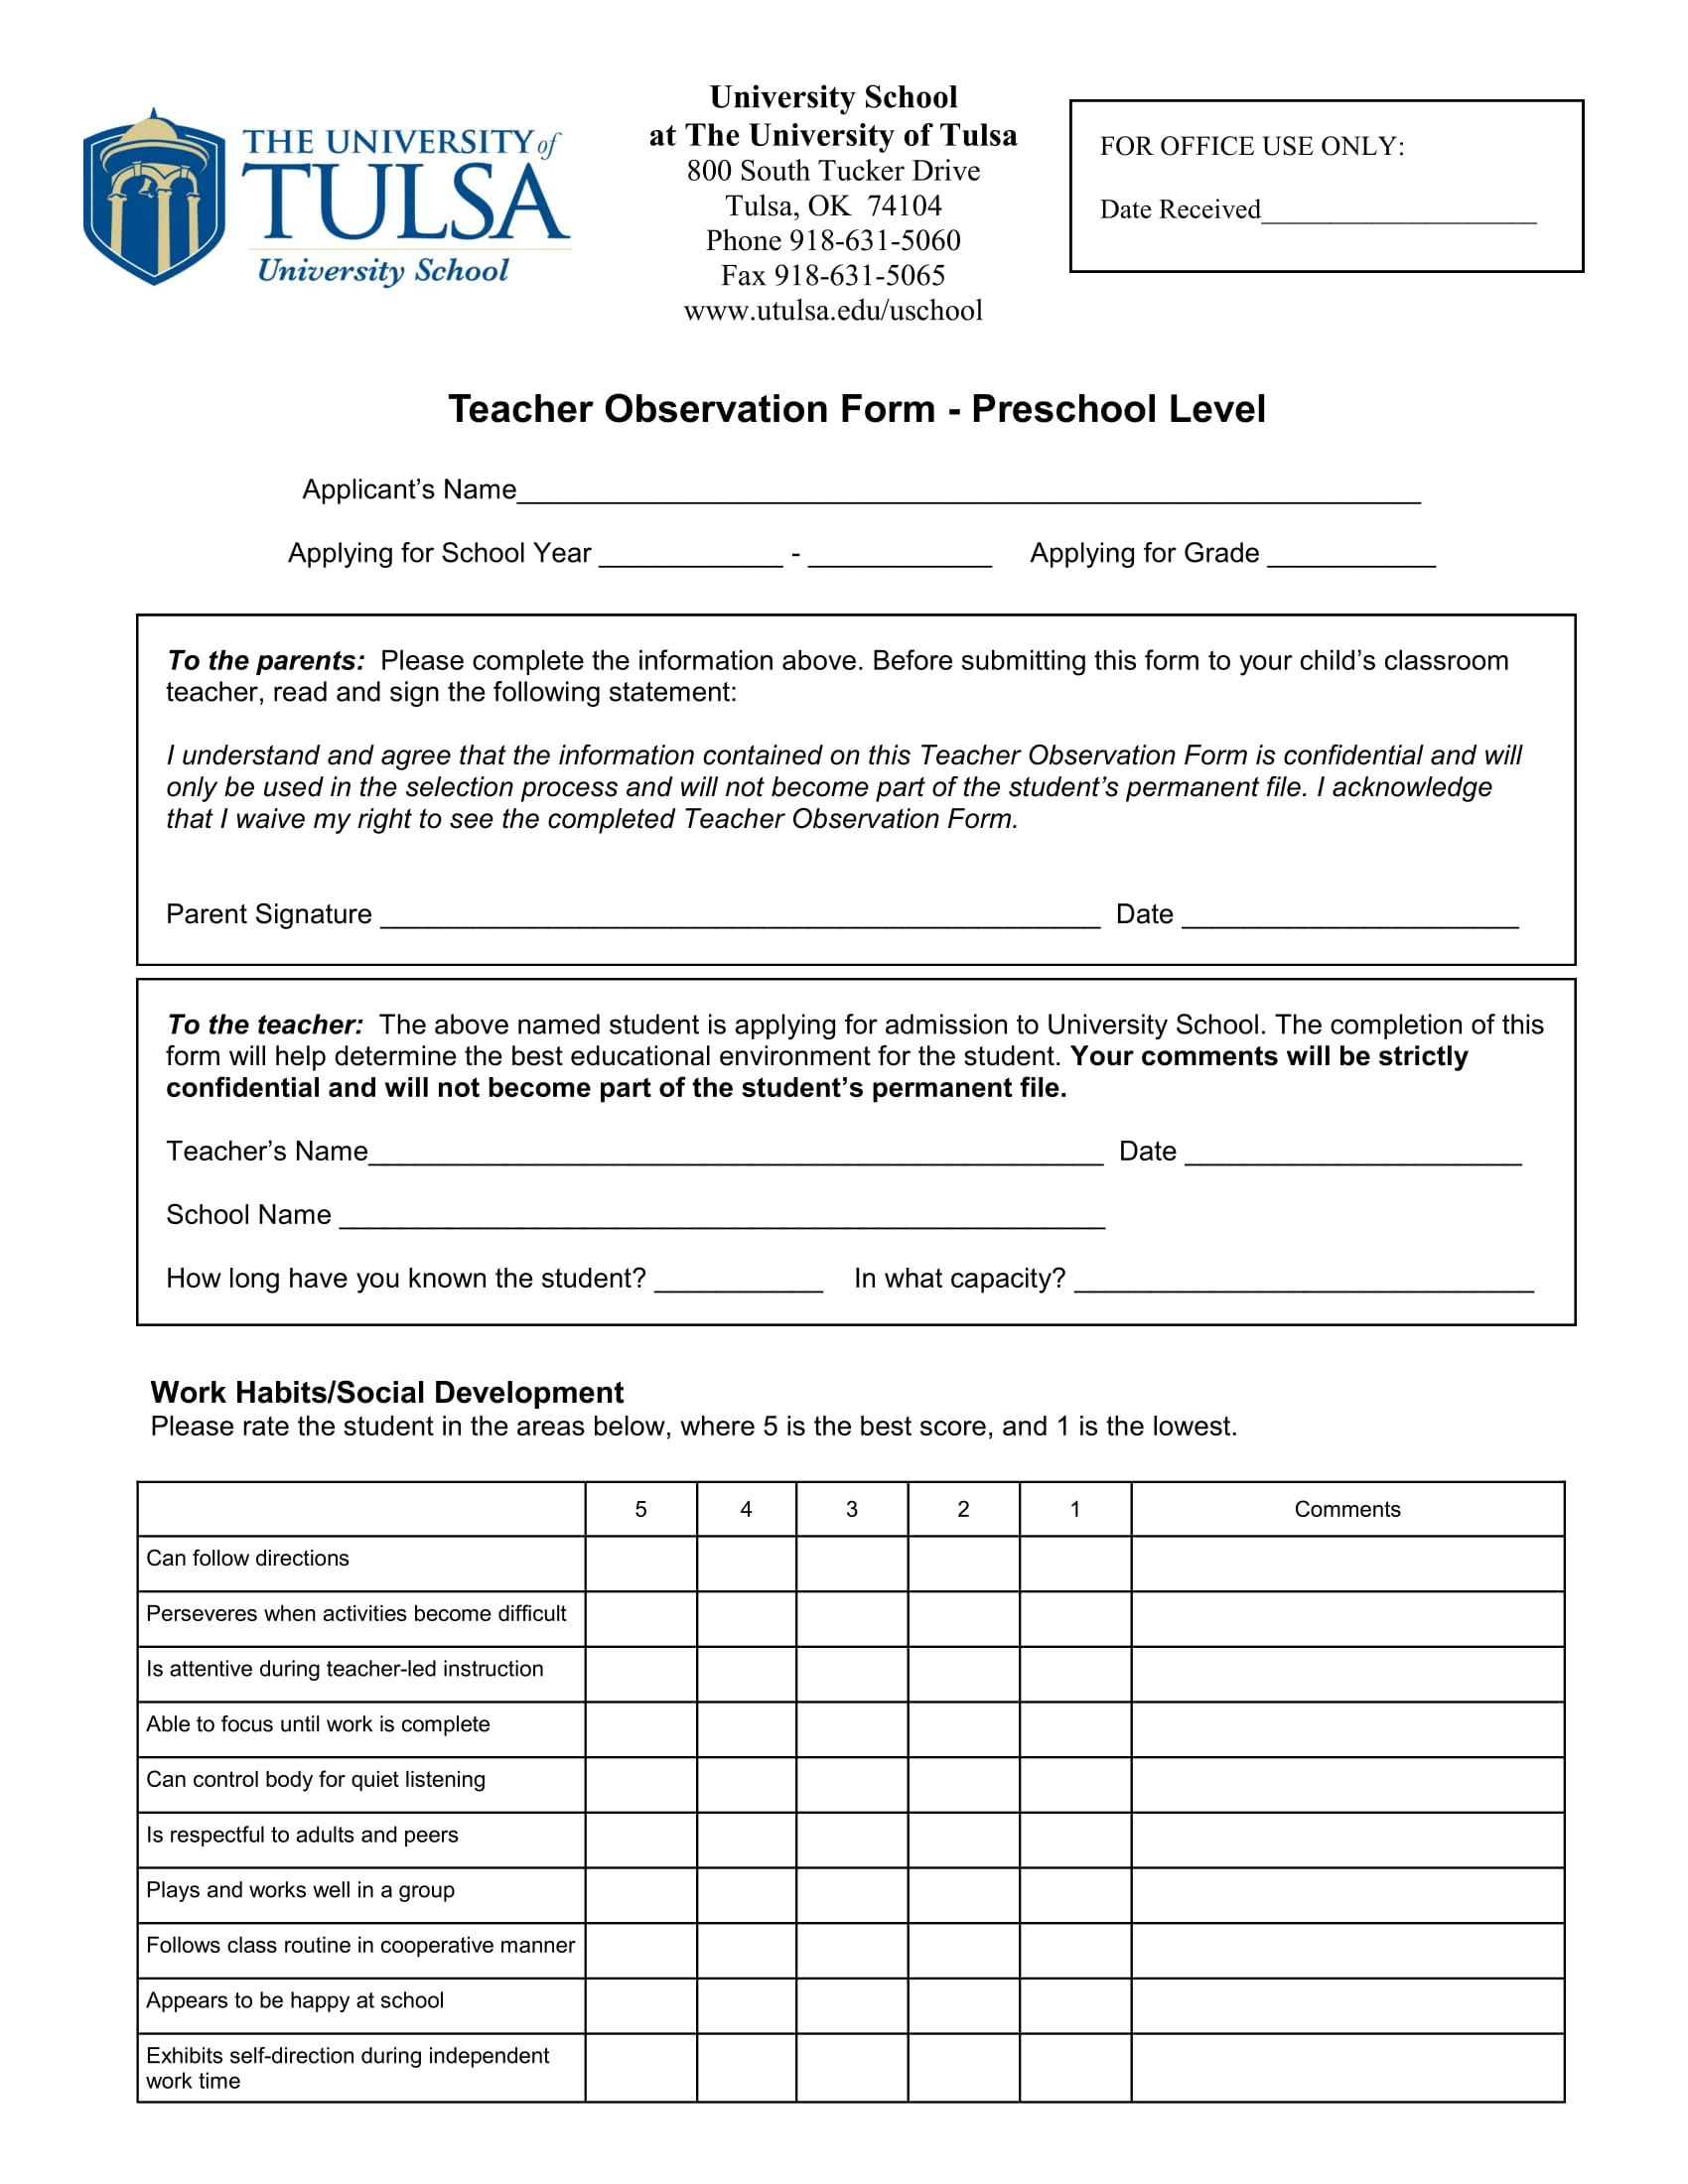 preschool level teacher observation form 1